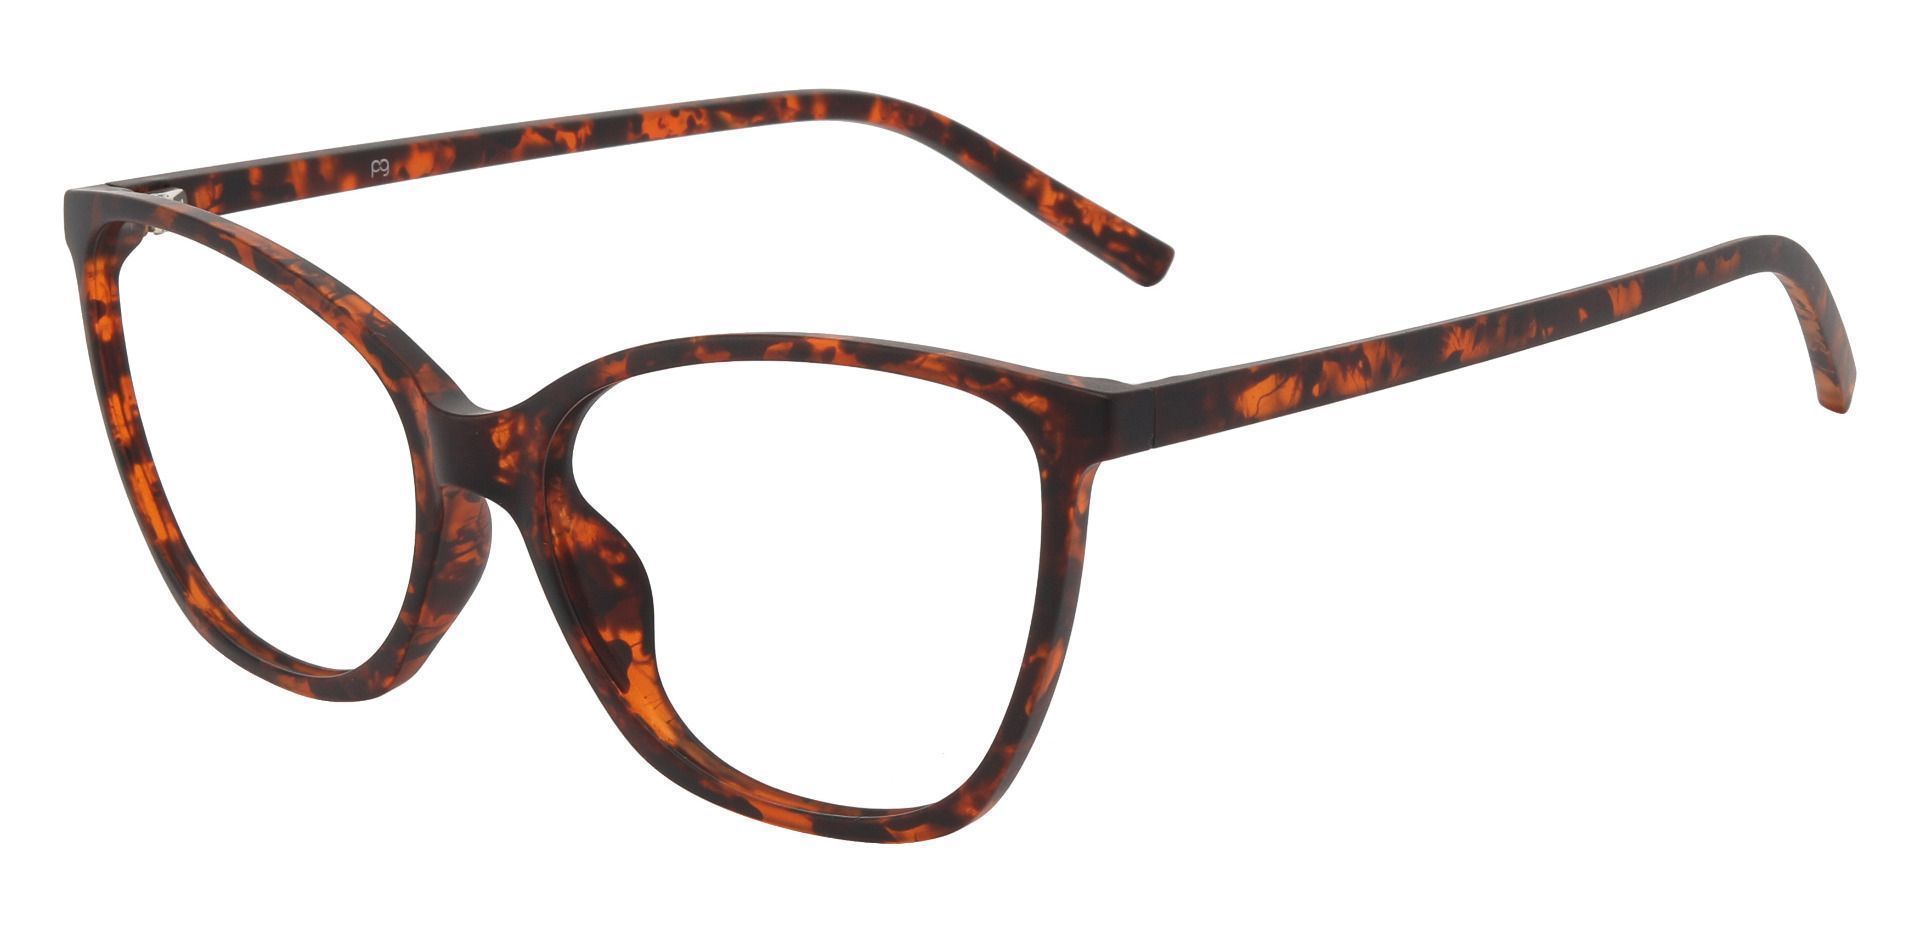 Meadow Cat Eye Prescription Glasses - Tortoise